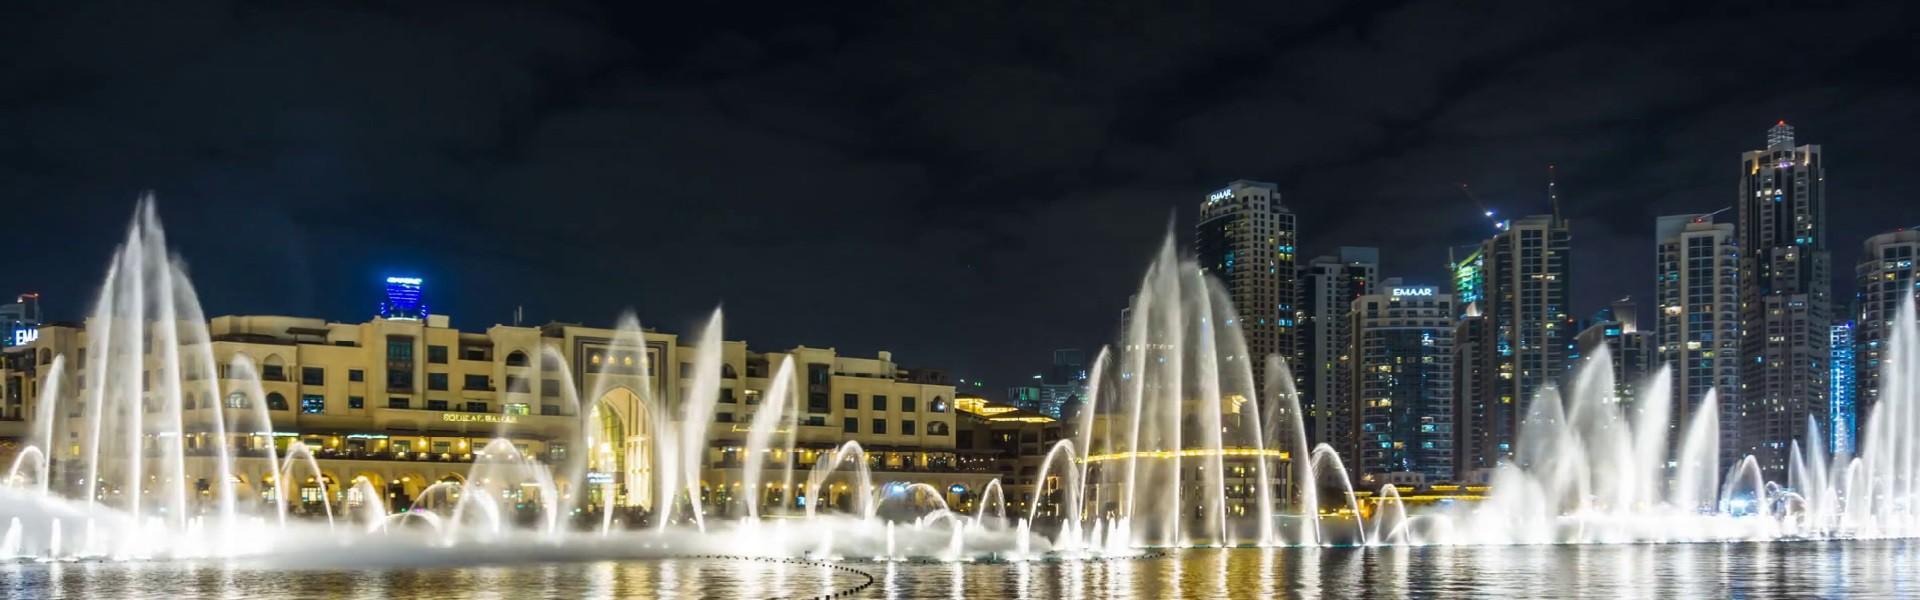 آبنمای موزیکال دبی  The Dubai Fountain